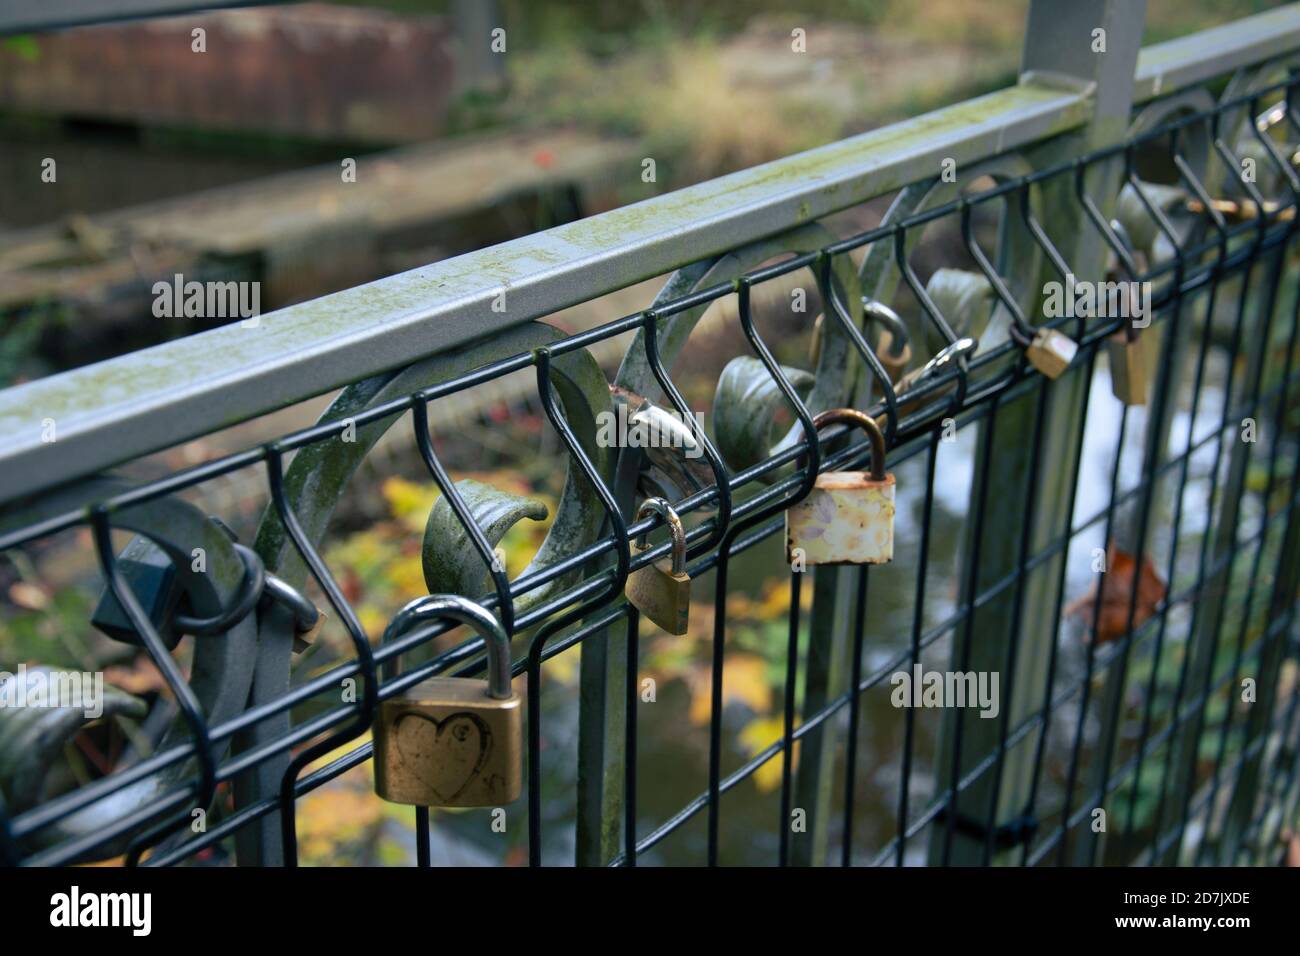 Des cadenas attachés aux rembardes d'un pont pour sceller des amours Foto Stock